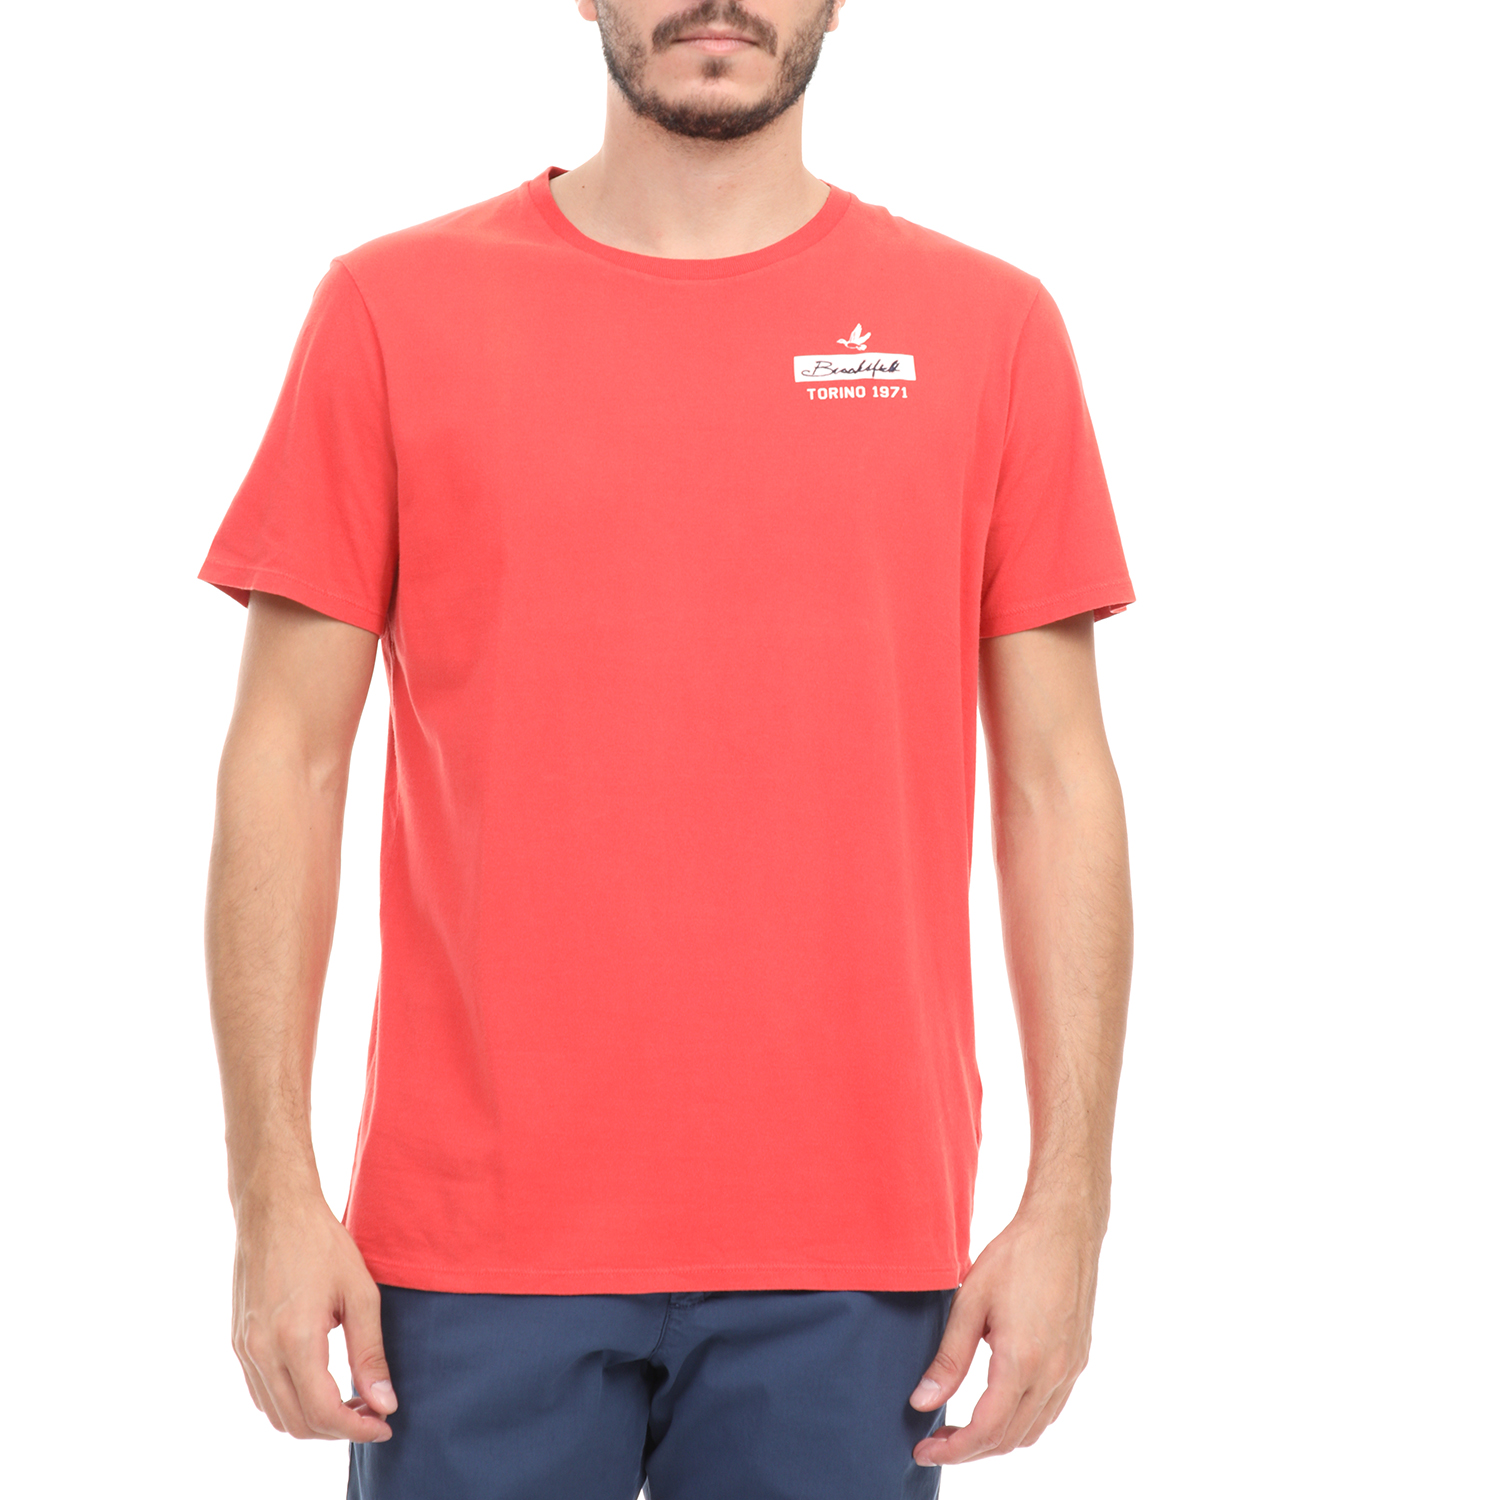 Ανδρικά/Ρούχα/Μπλούζες/Κοντομάνικες BROOKSFIELD - Ανδρικό t-shirt BROOKSFIELD κόκκινη